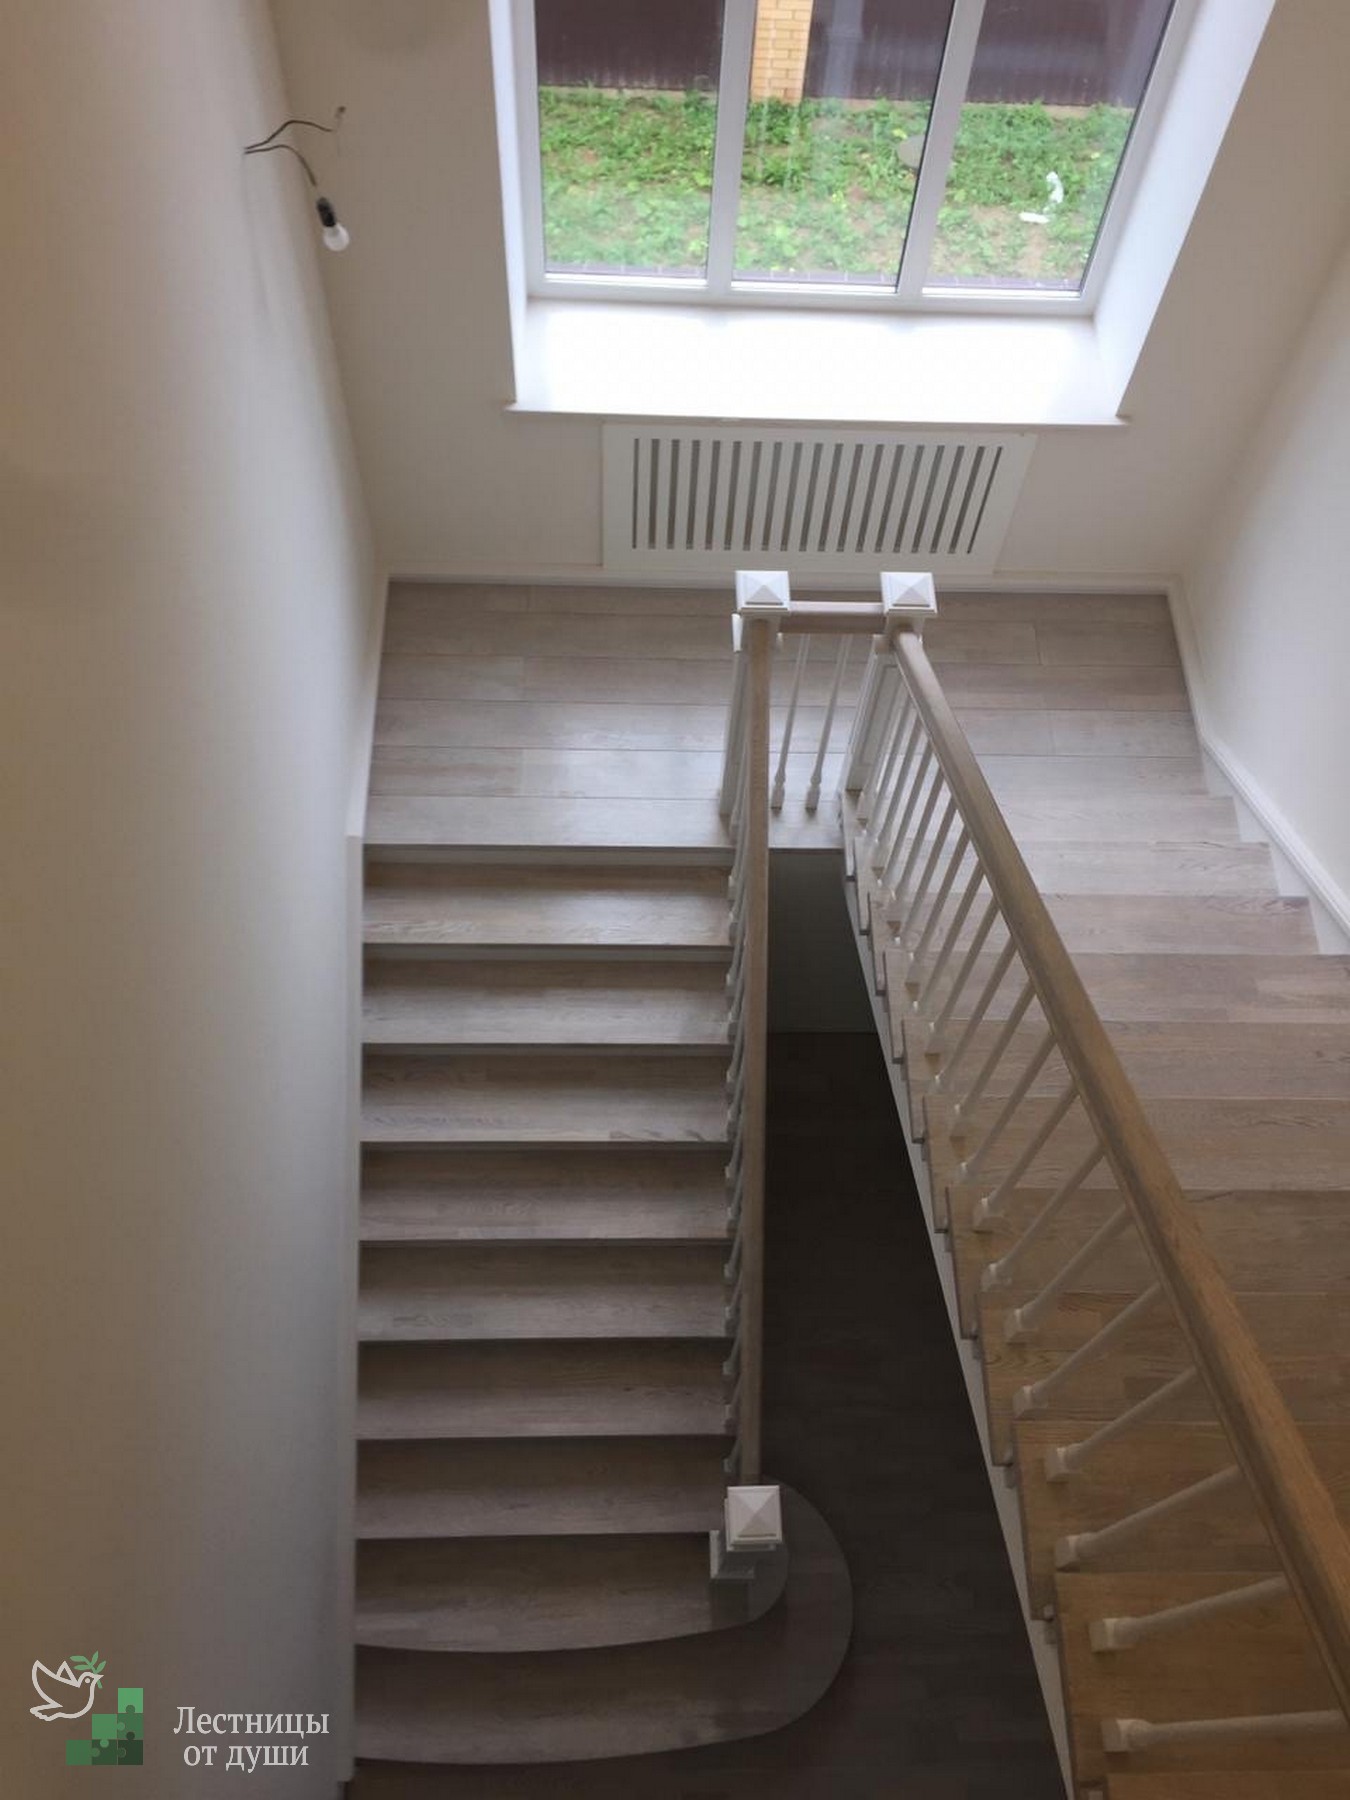 Отделка бетонной лестницы деревом в частном доме | Лестницы от души